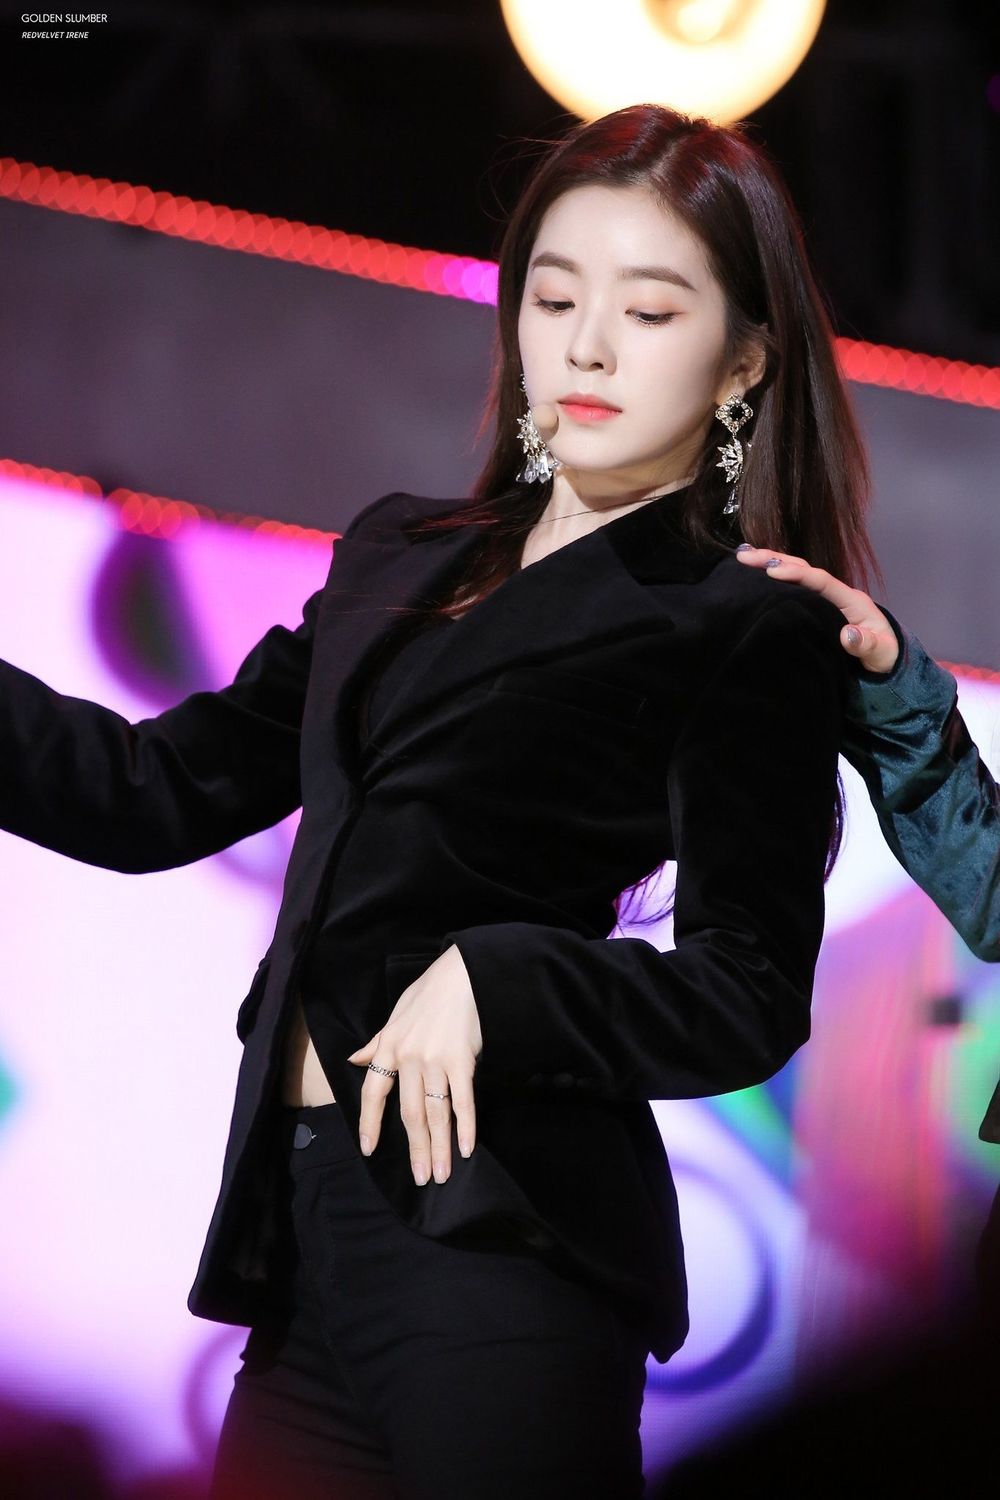  
Irene nổi bật visual với suit đen (Ảnh: REDVELVETSSNFG).